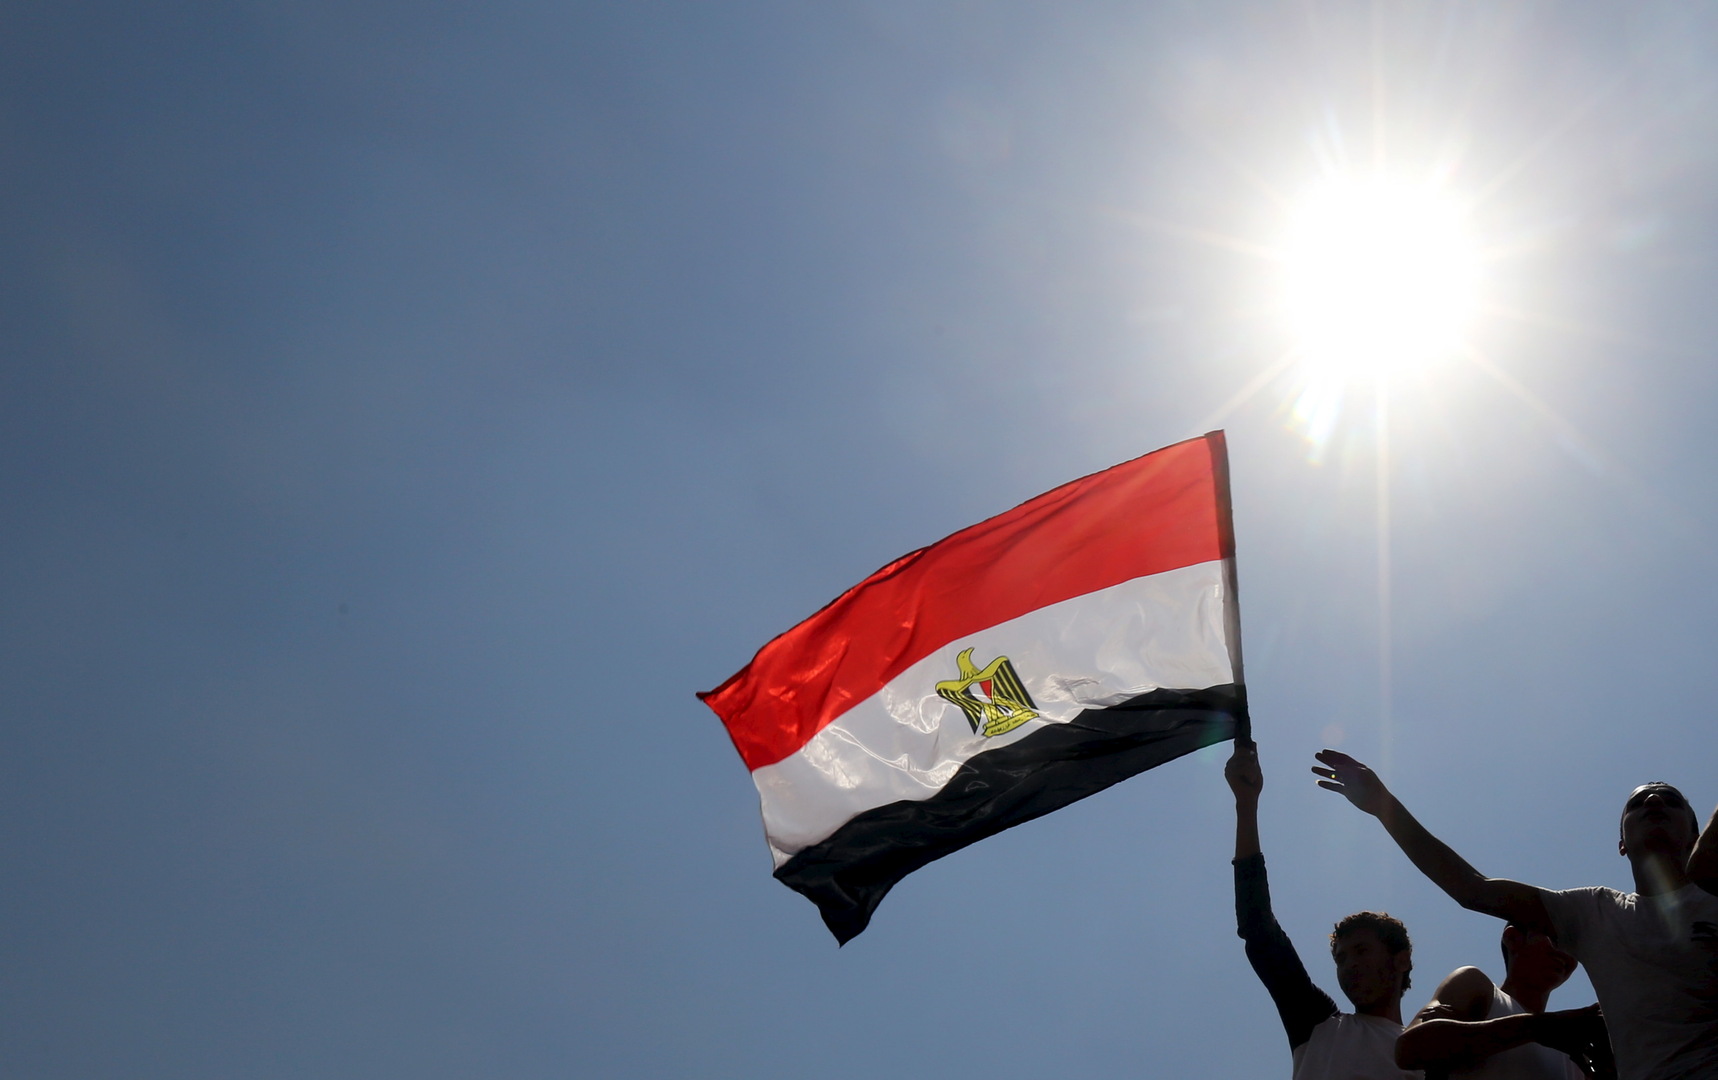 المخابرات المصرية تعلن تحرير عدد من المواطنين المختطفين في ليبيا